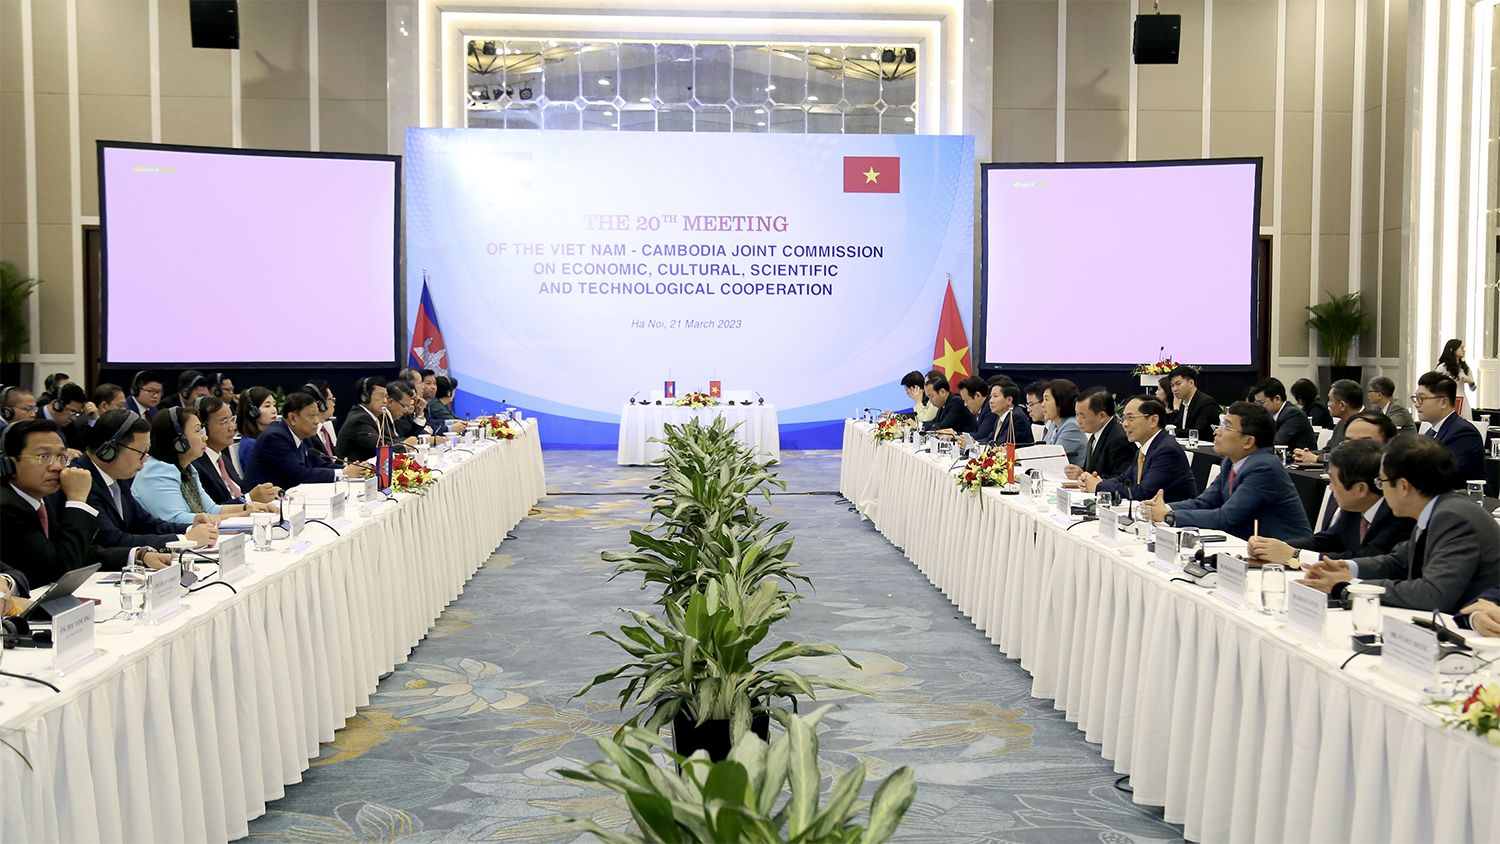 Kỳ họp lần thứ 20 Ủy ban hỗn hợp Việt Nam-Campuchia về hợp tác kinh tế, văn hóa, khoa học và kỹ thuật diễn ra vào ngày 21/3/2023. 